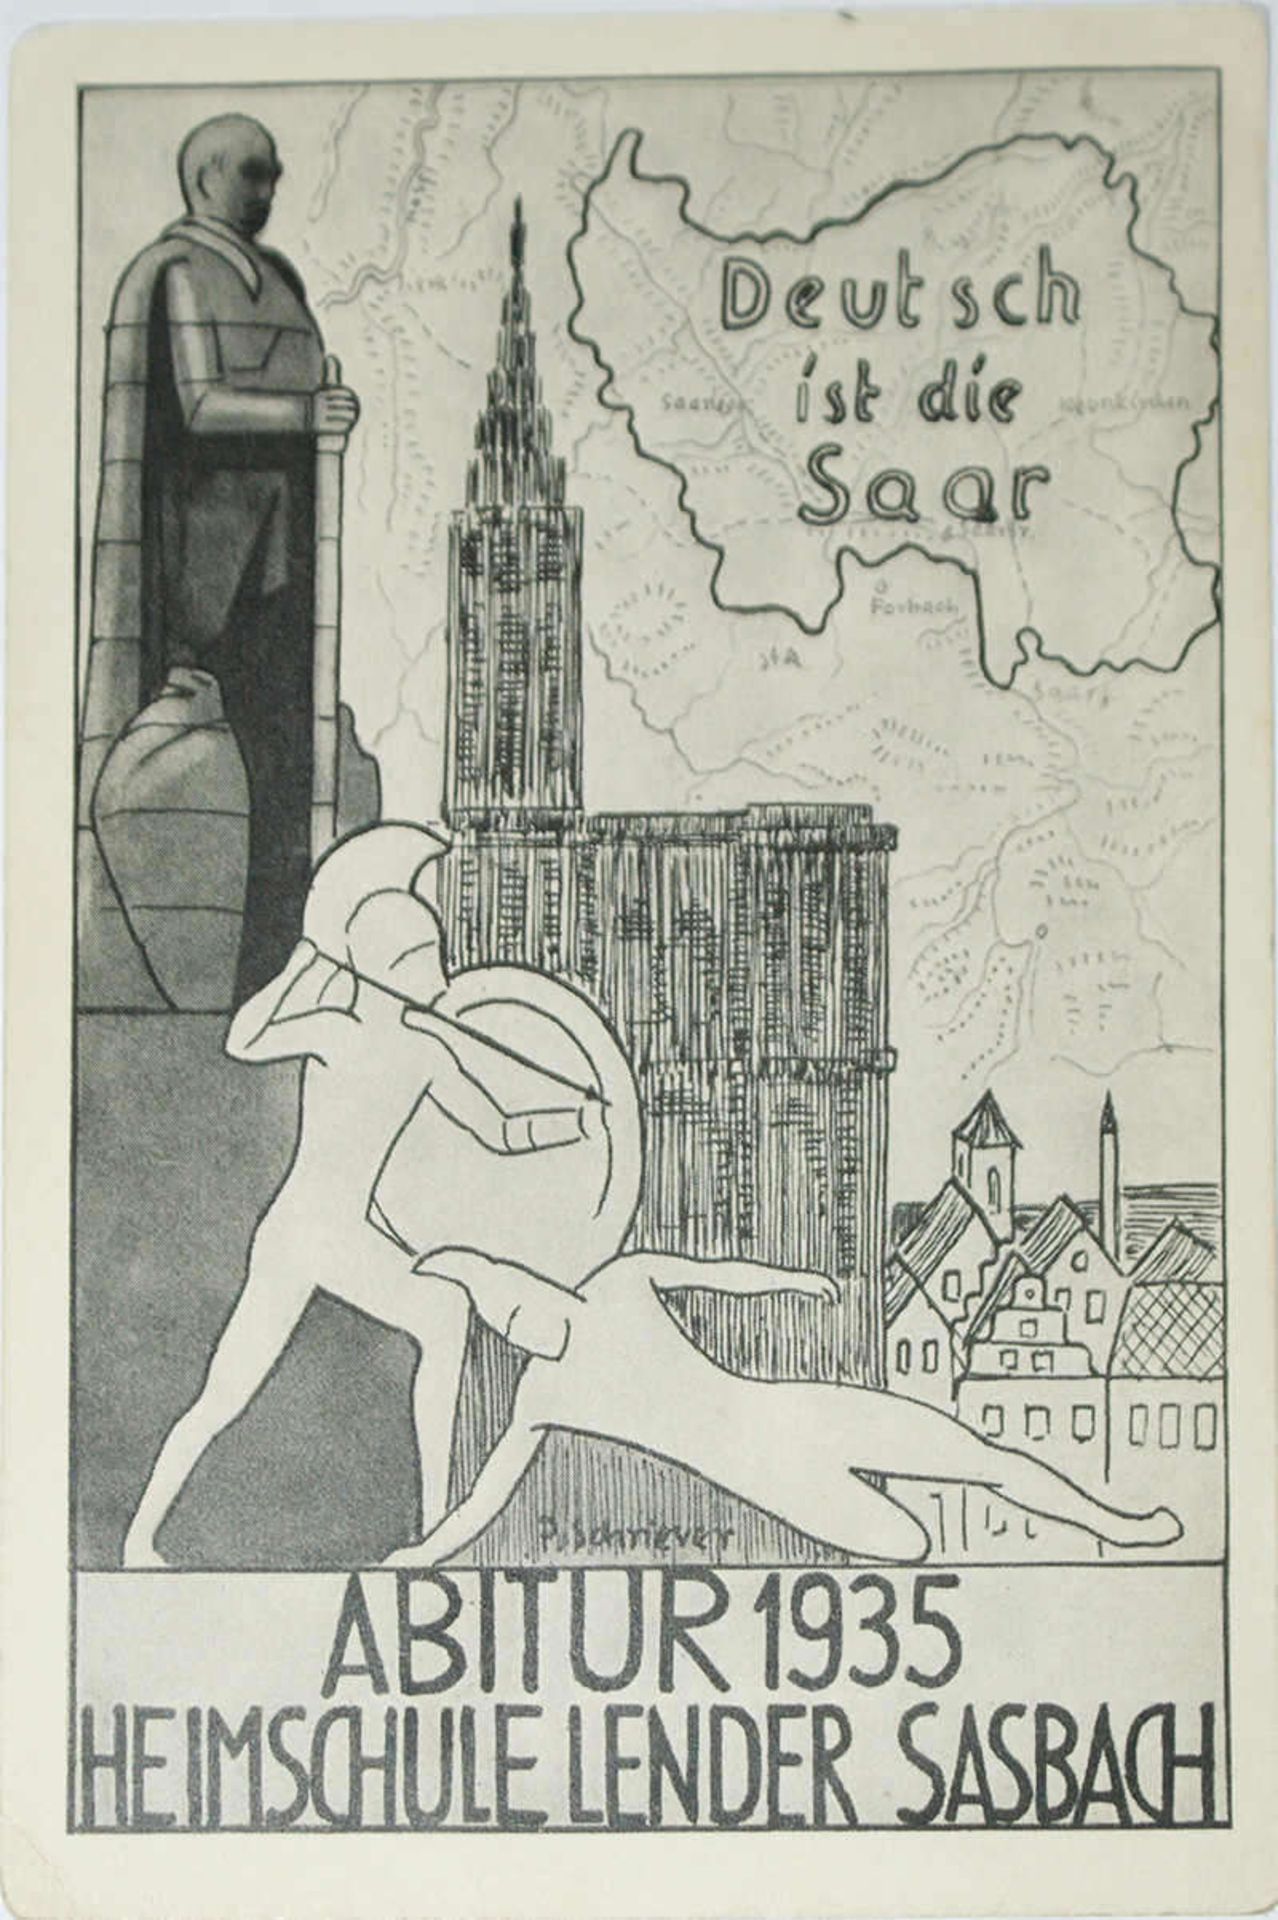 Postkarte "Deutsch ist die Saar", Gymnasium Sasbach bei Achern, Abitur 1935, Heimschule Lender